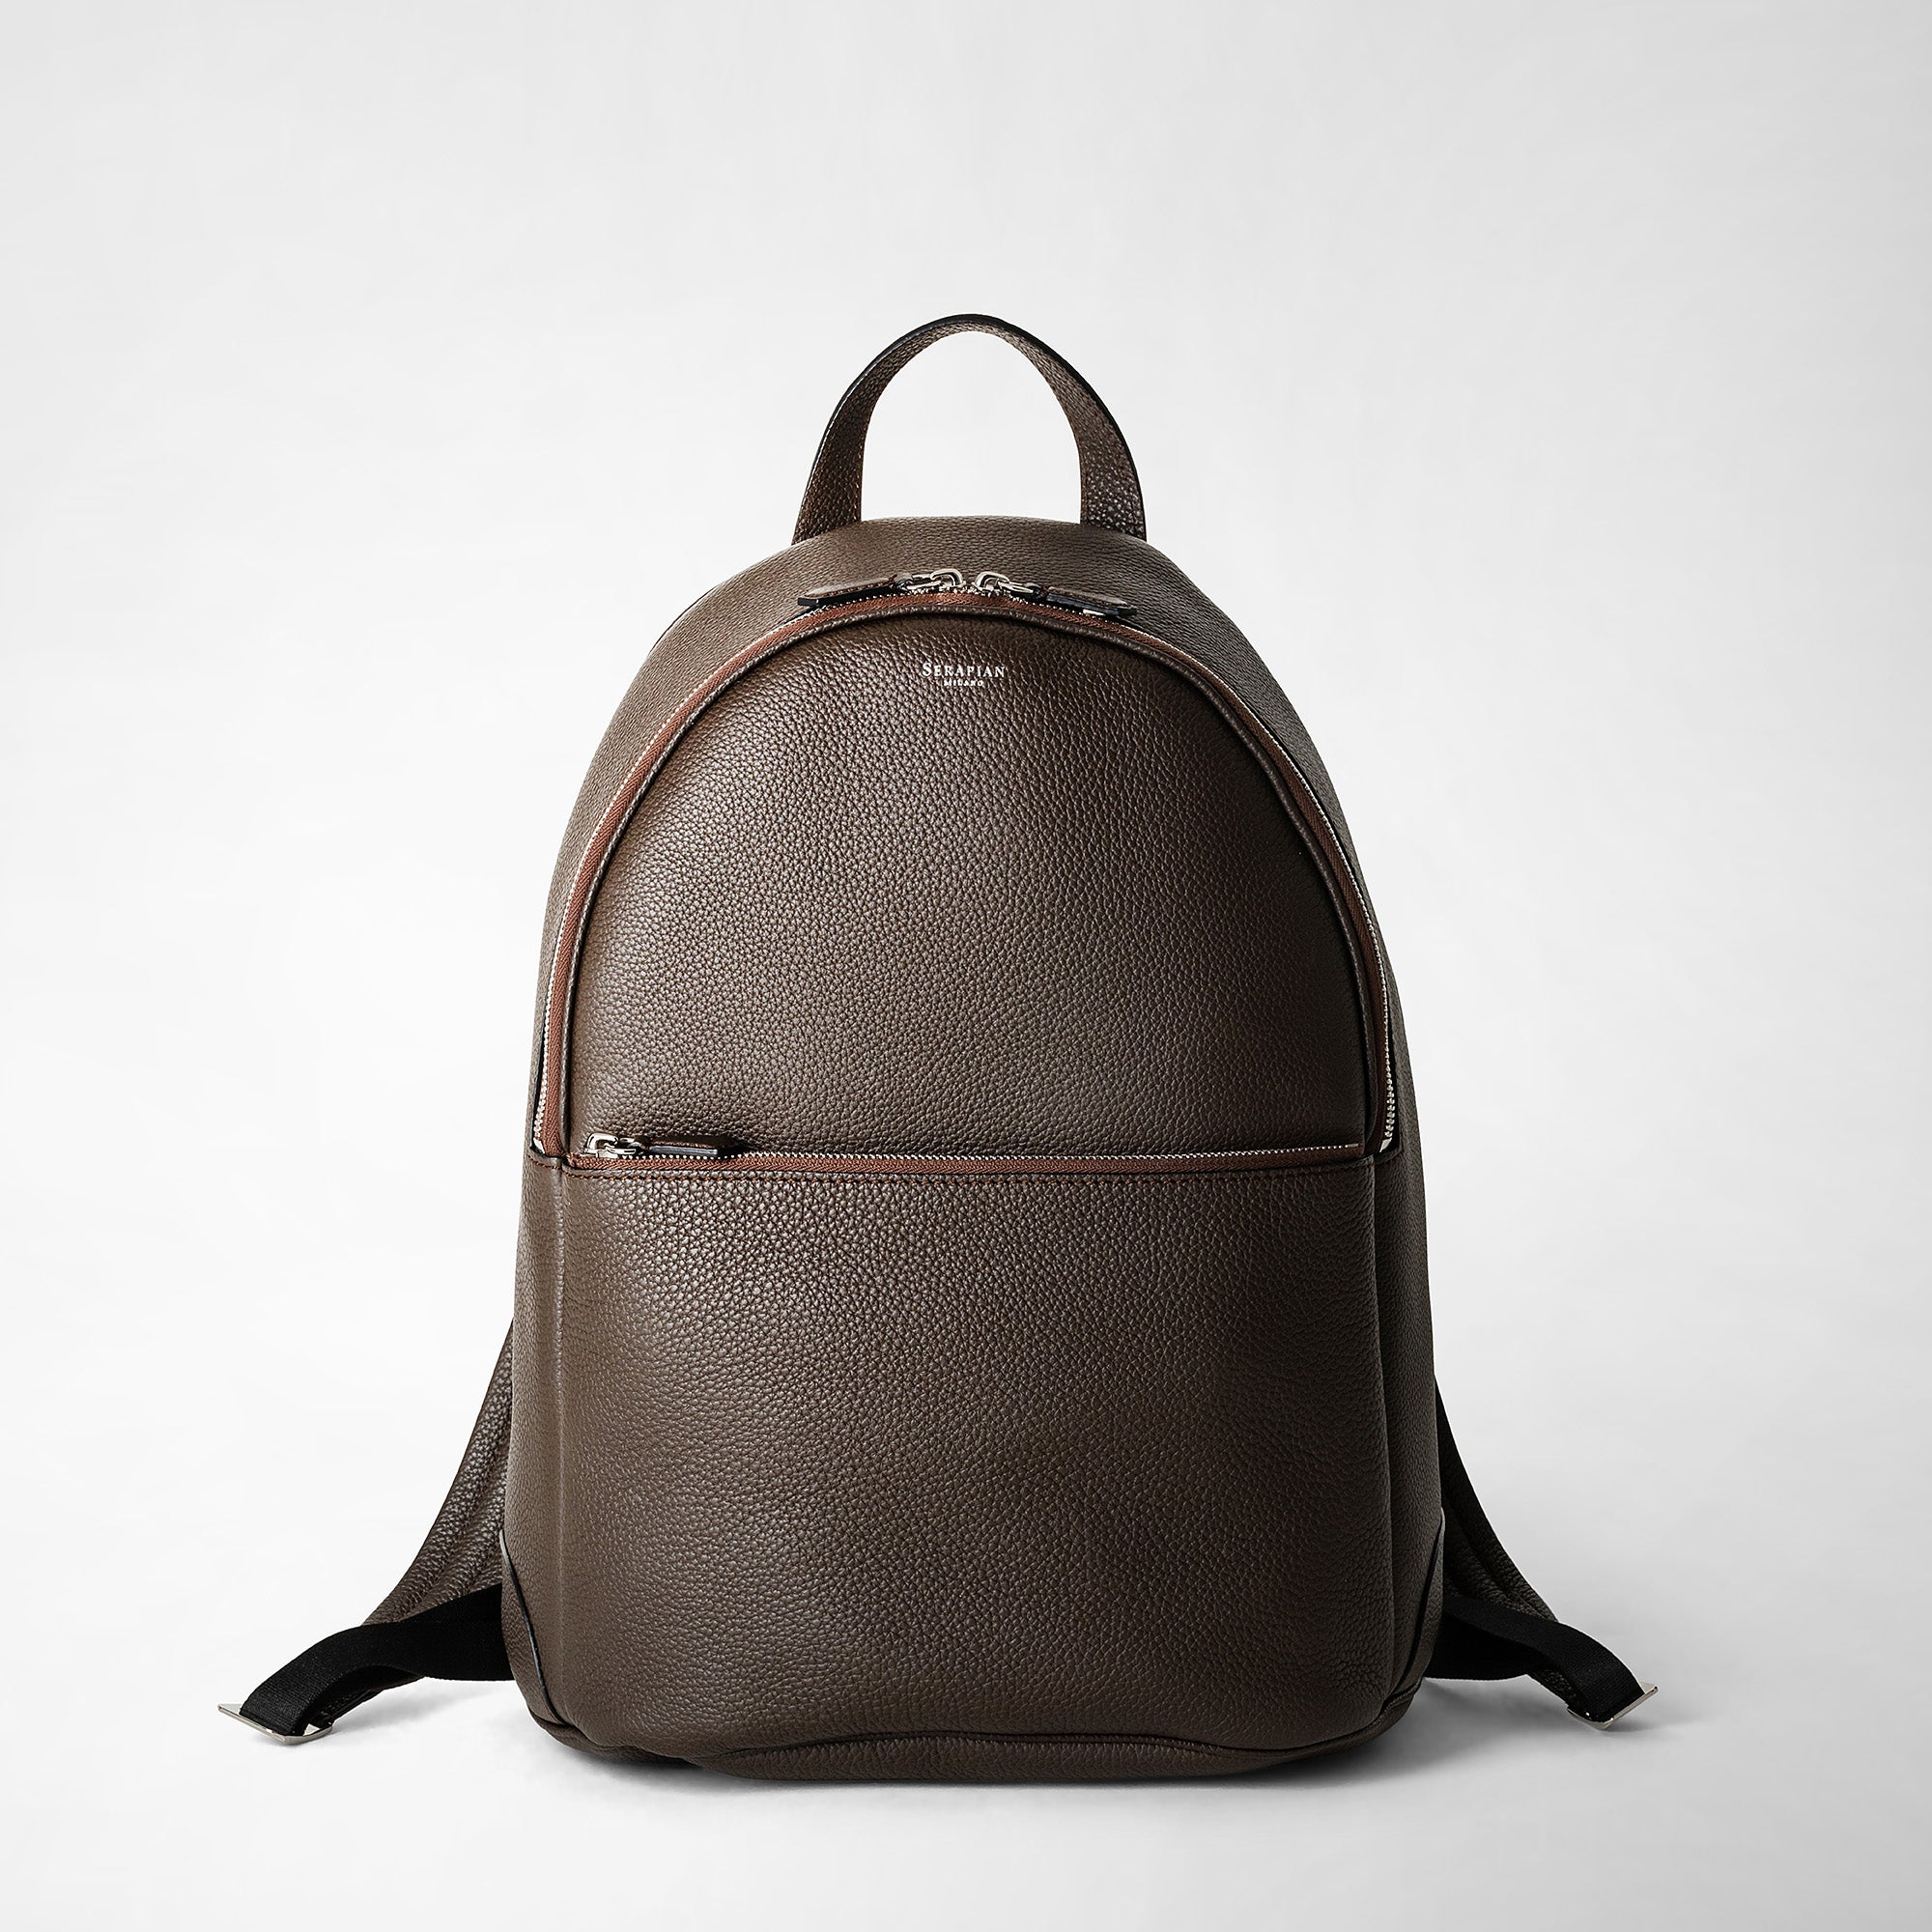 Burlington Brown Soft Leather Shoulder Bag Handbag Purse